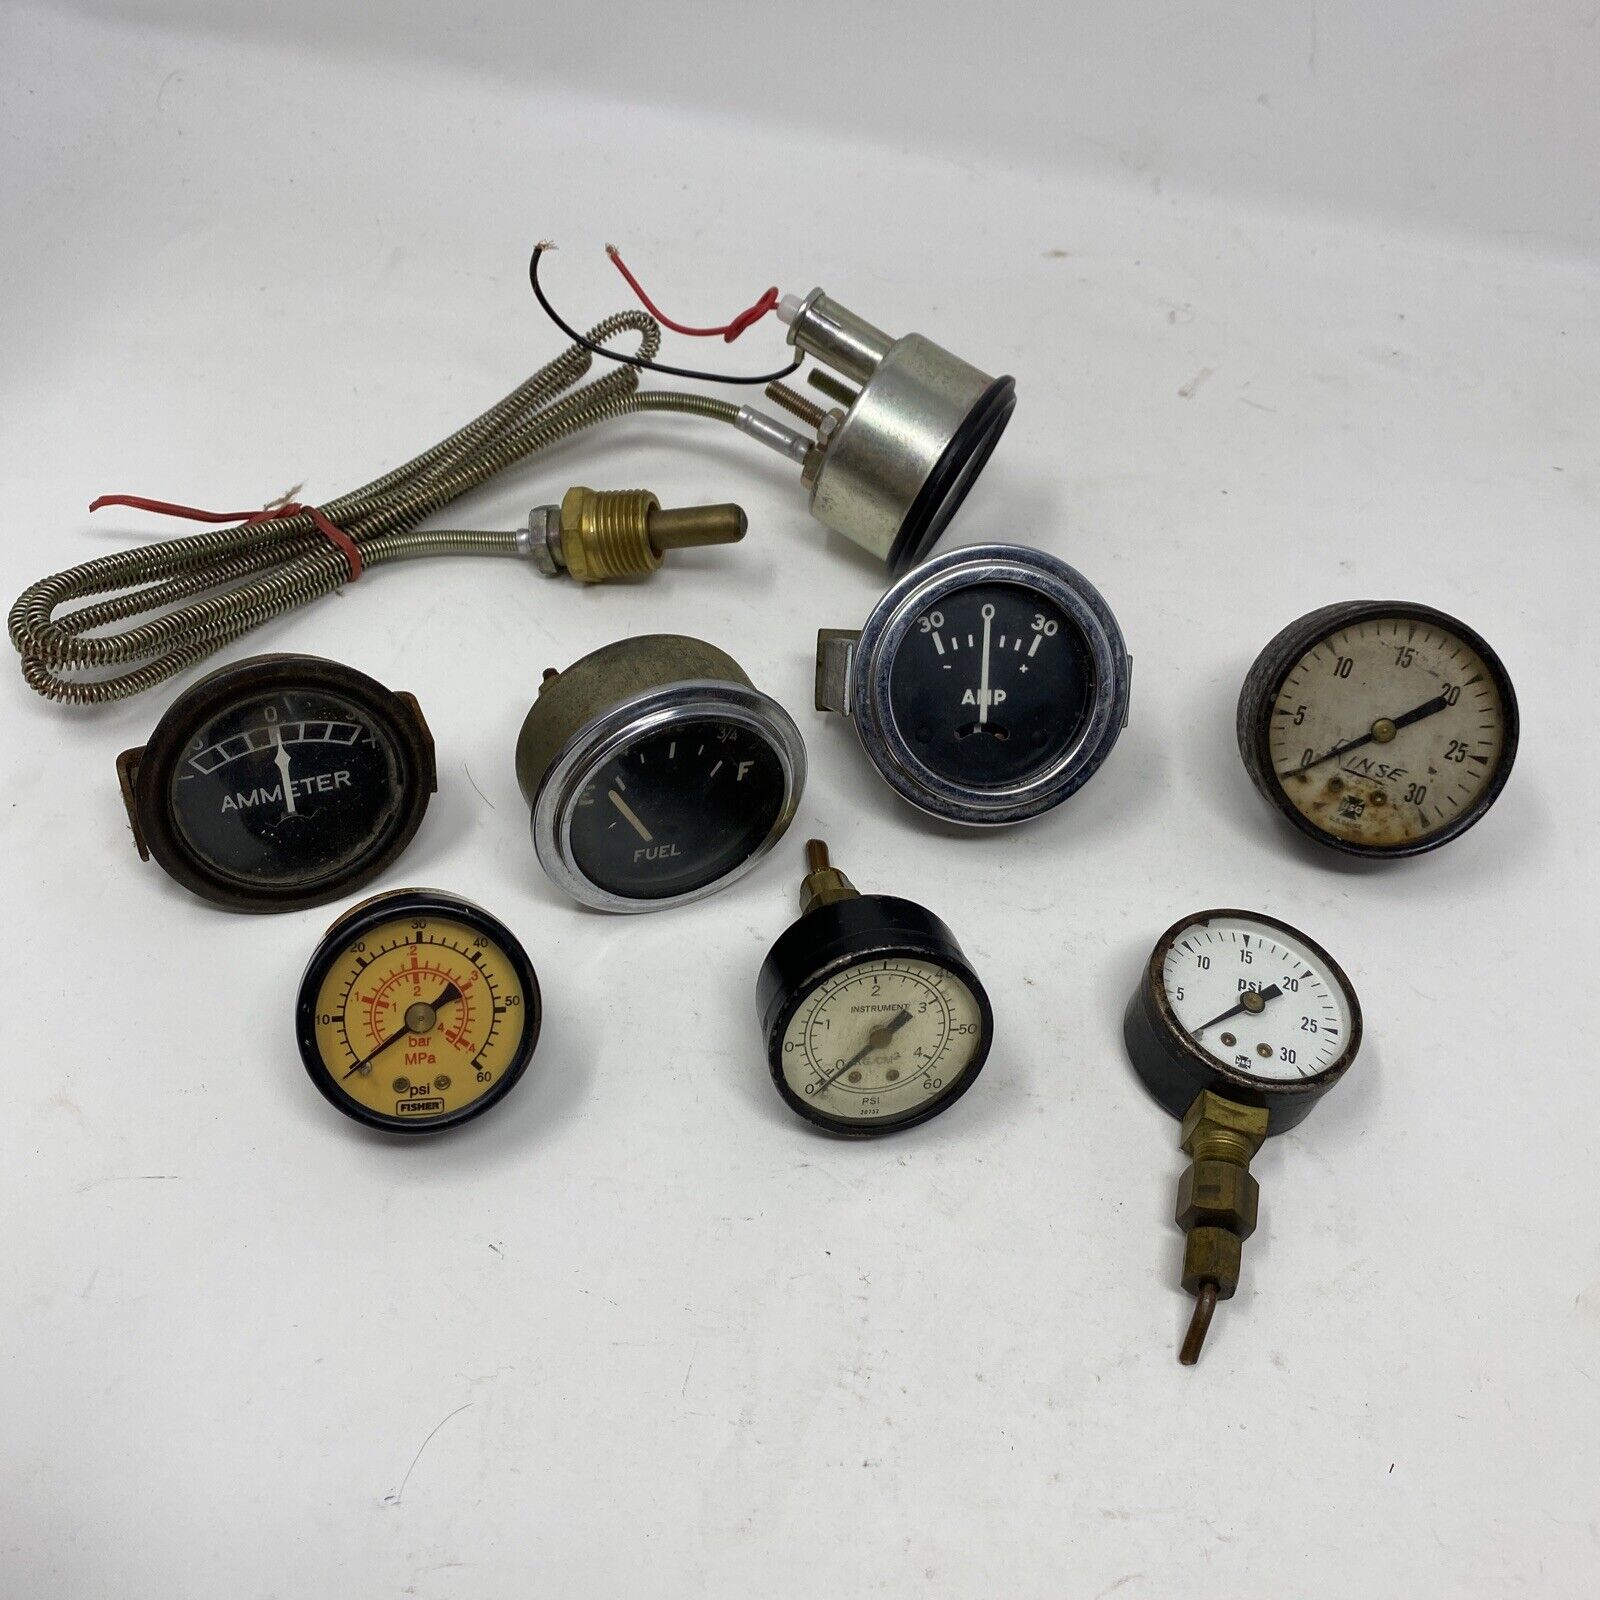 Lot of 8 vintage antique steampunk pressure gauges various brands Fuel Psi Usg